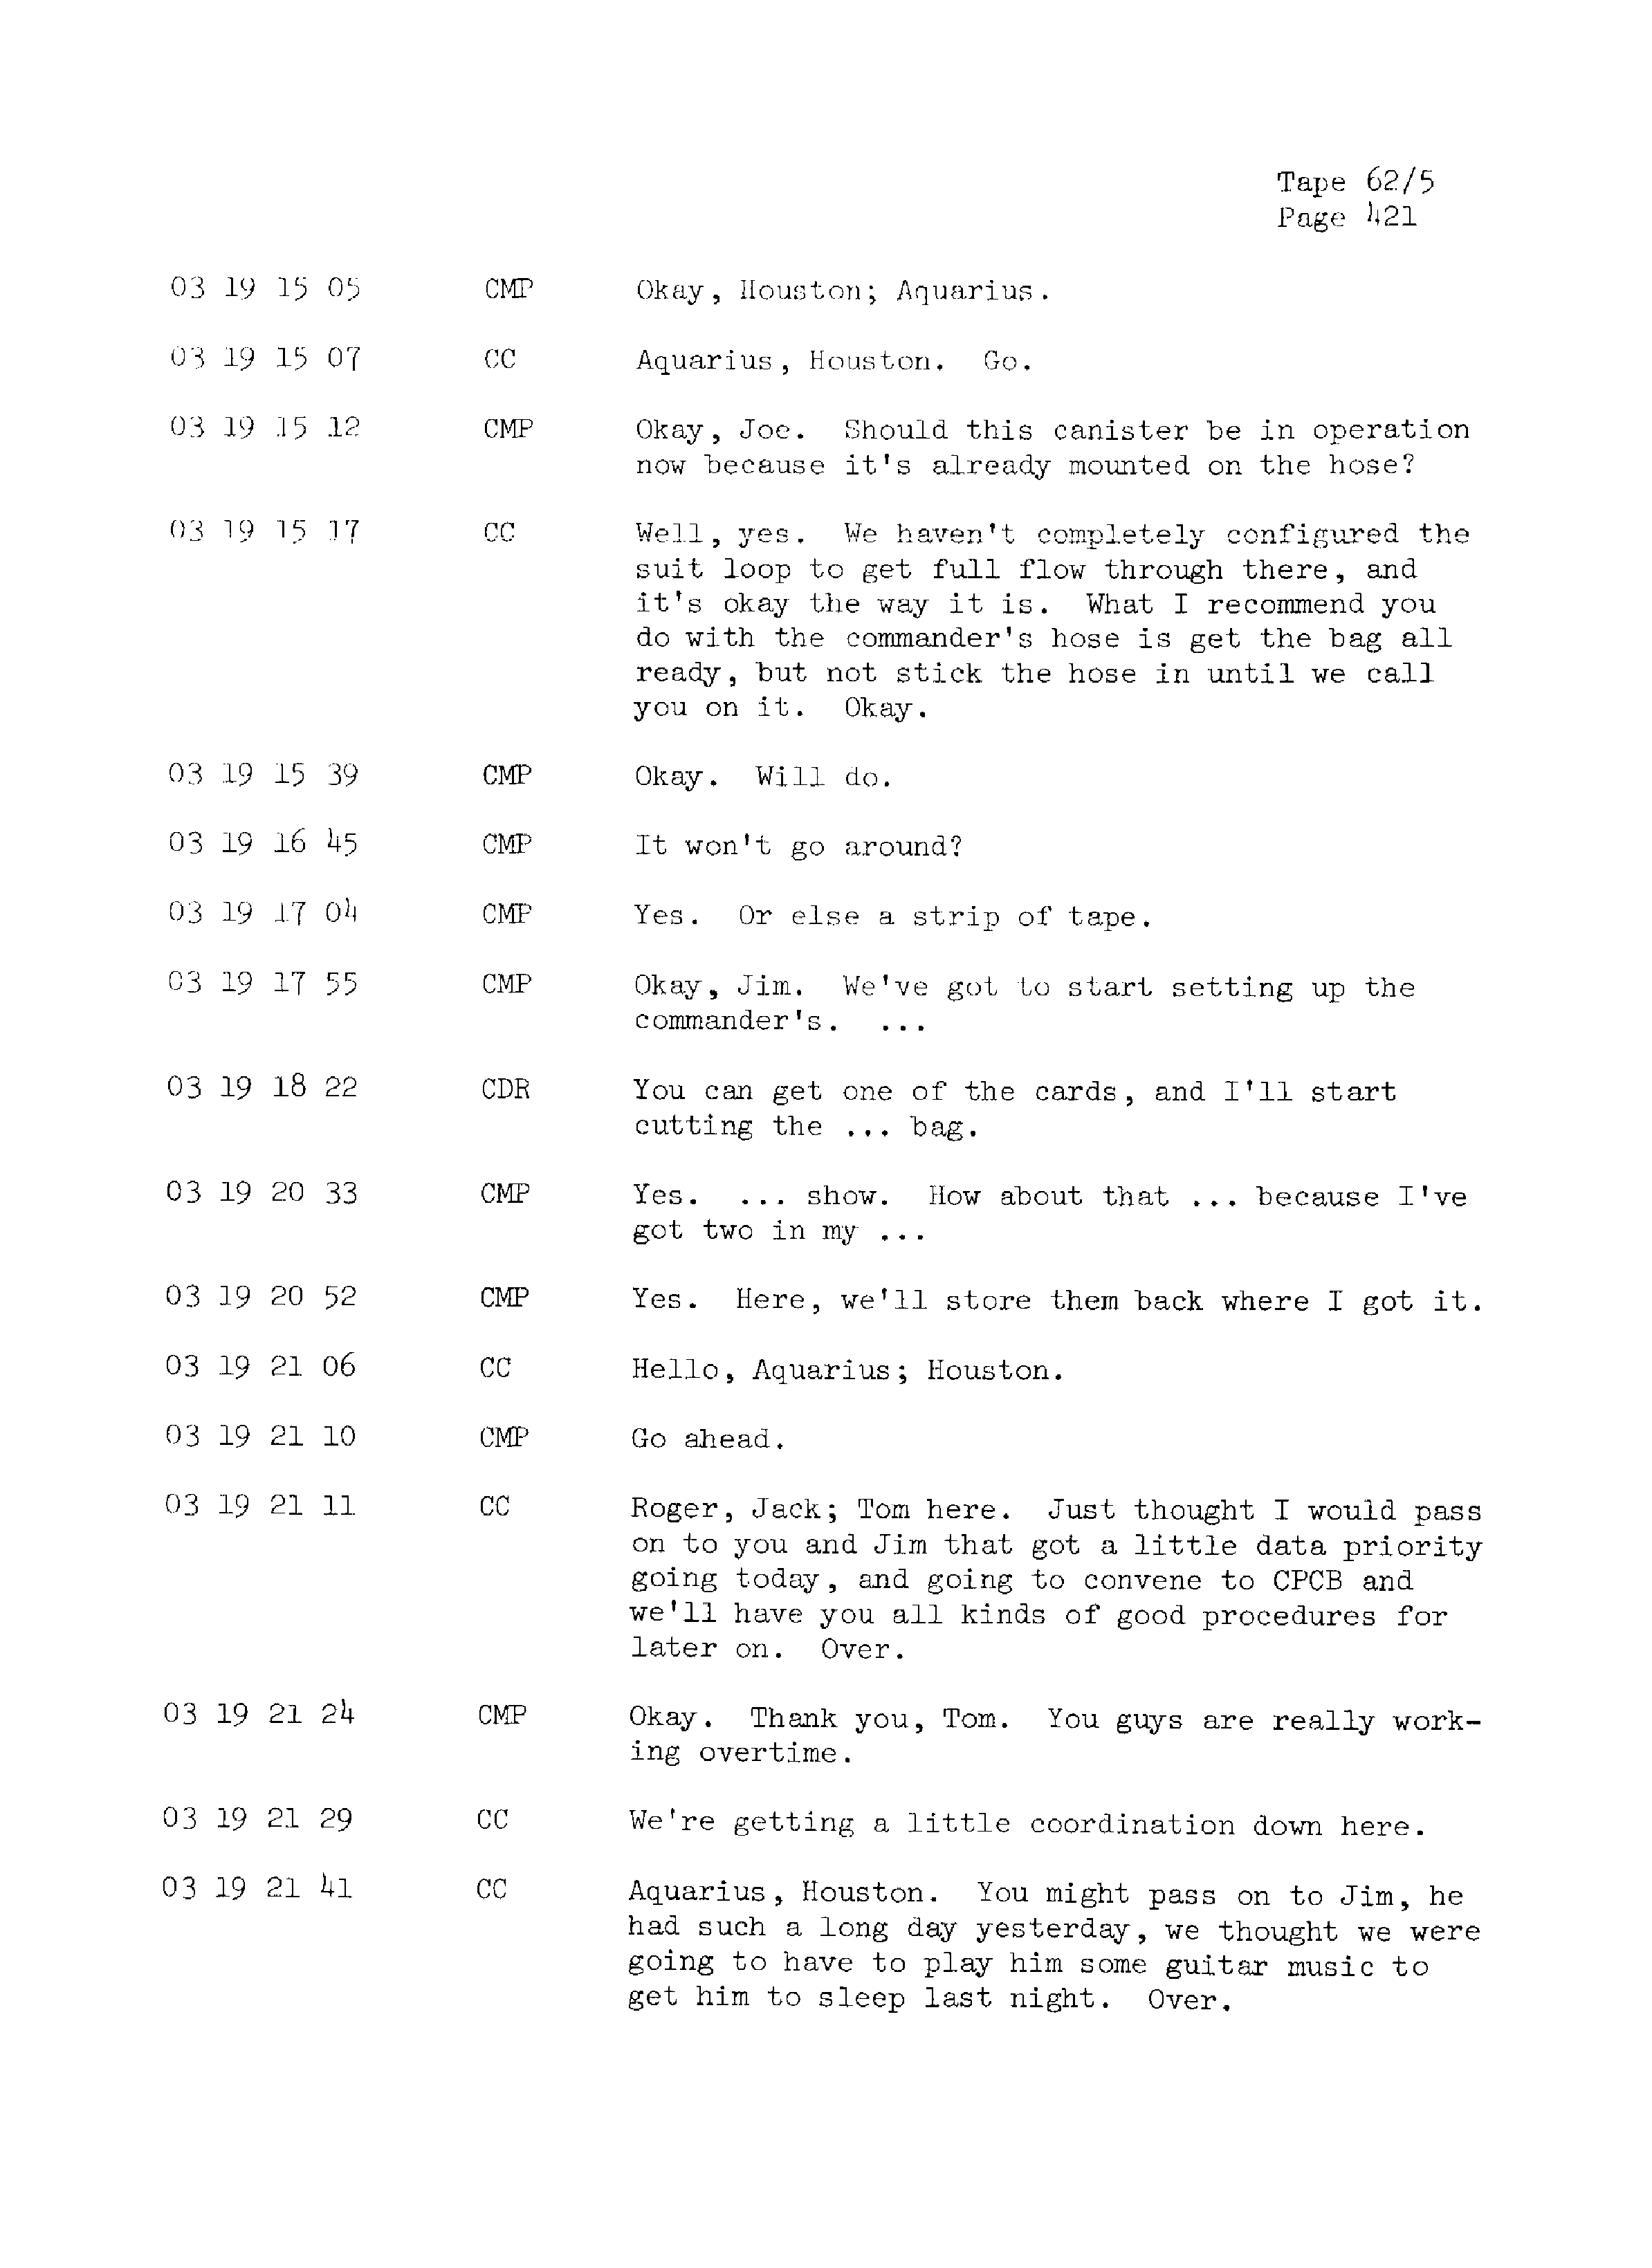 Page 428 of Apollo 13’s original transcript